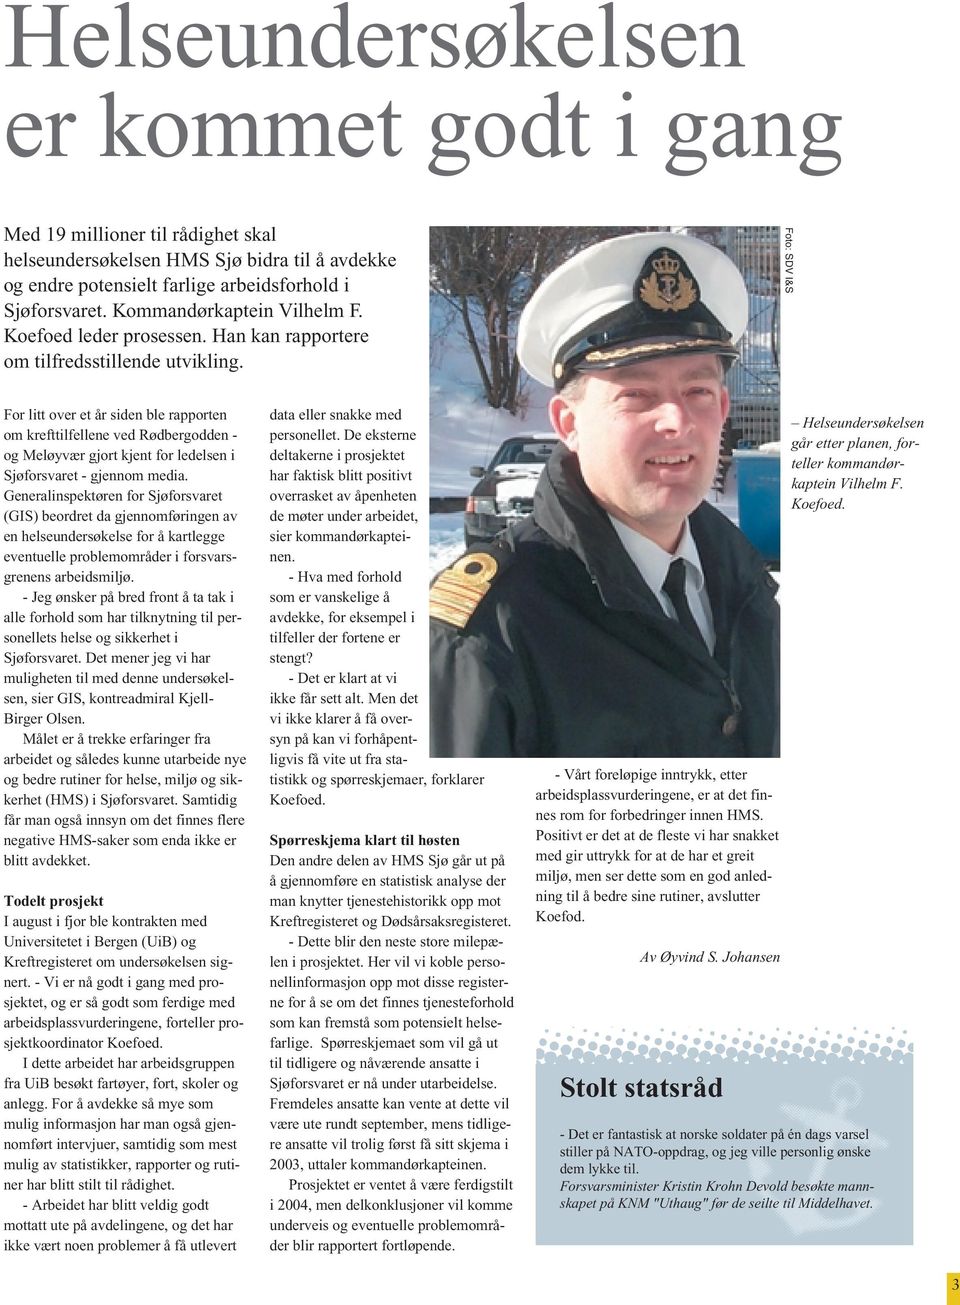 Foto: SDV I&S For litt over et år siden ble rapporten om krefttilfellene ved Rødbergodden - og Meløyvær gjort kjent for ledelsen i Sjøforsvaret - gjennom media.